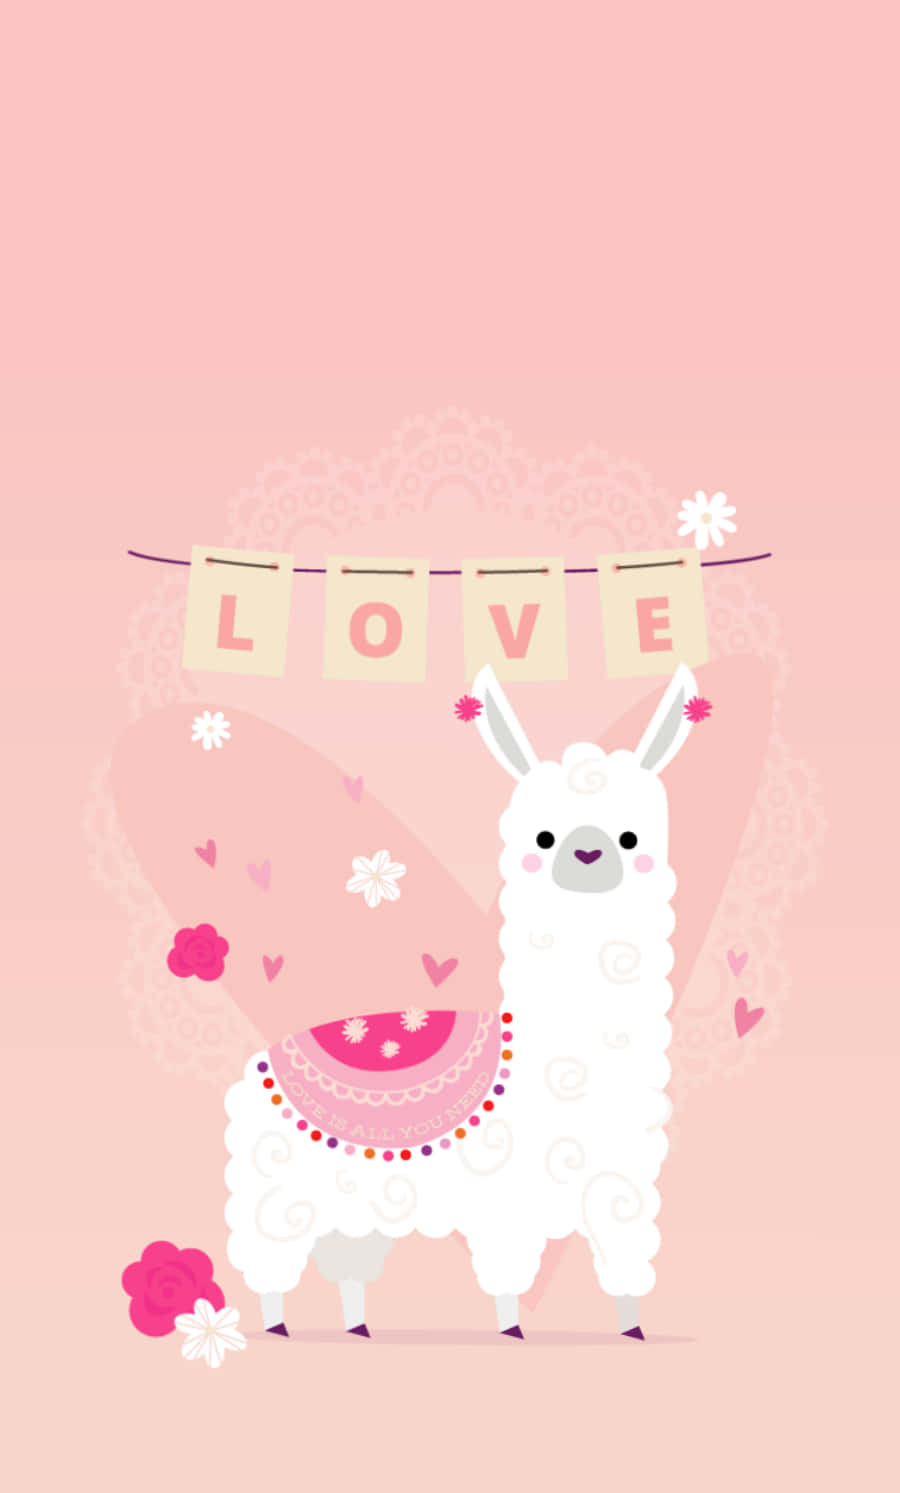 A Cute Llama With Love Written On It Wallpaper